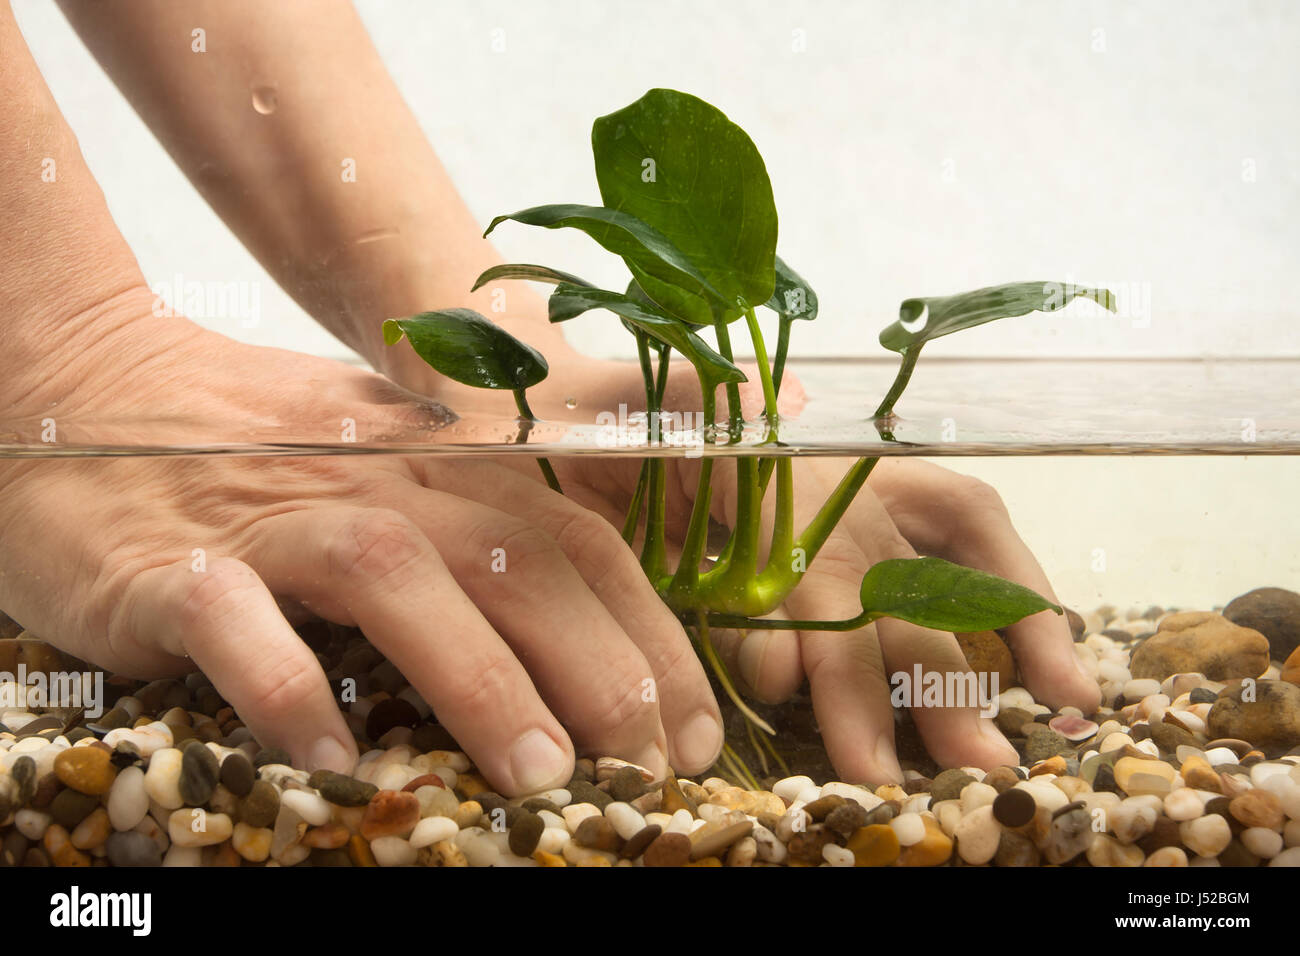 hands of aquarian planting anubias in aquarium Stock Photo